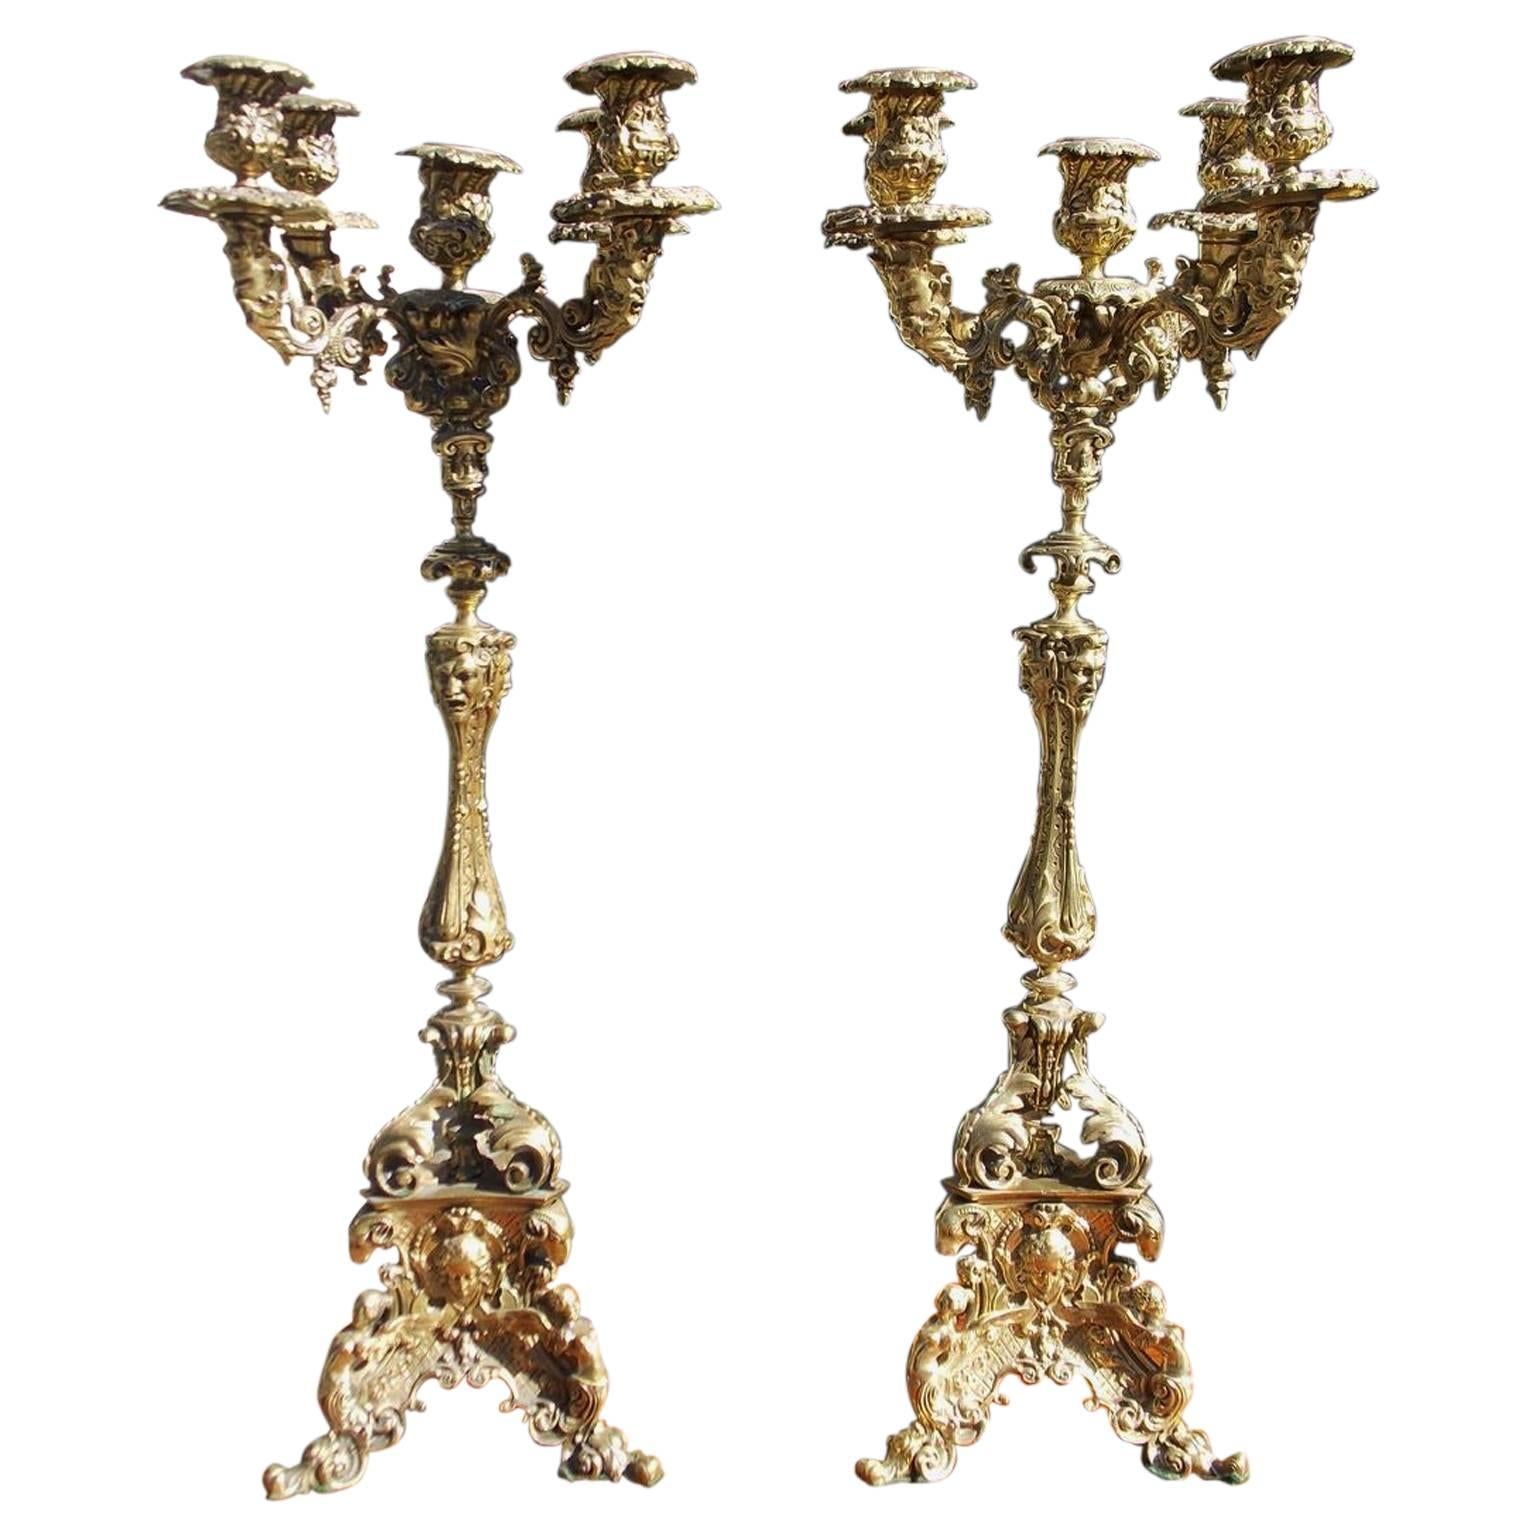 Paire de candélabres italiens en bronze à motifs floraux et figuratifs, vers 1830